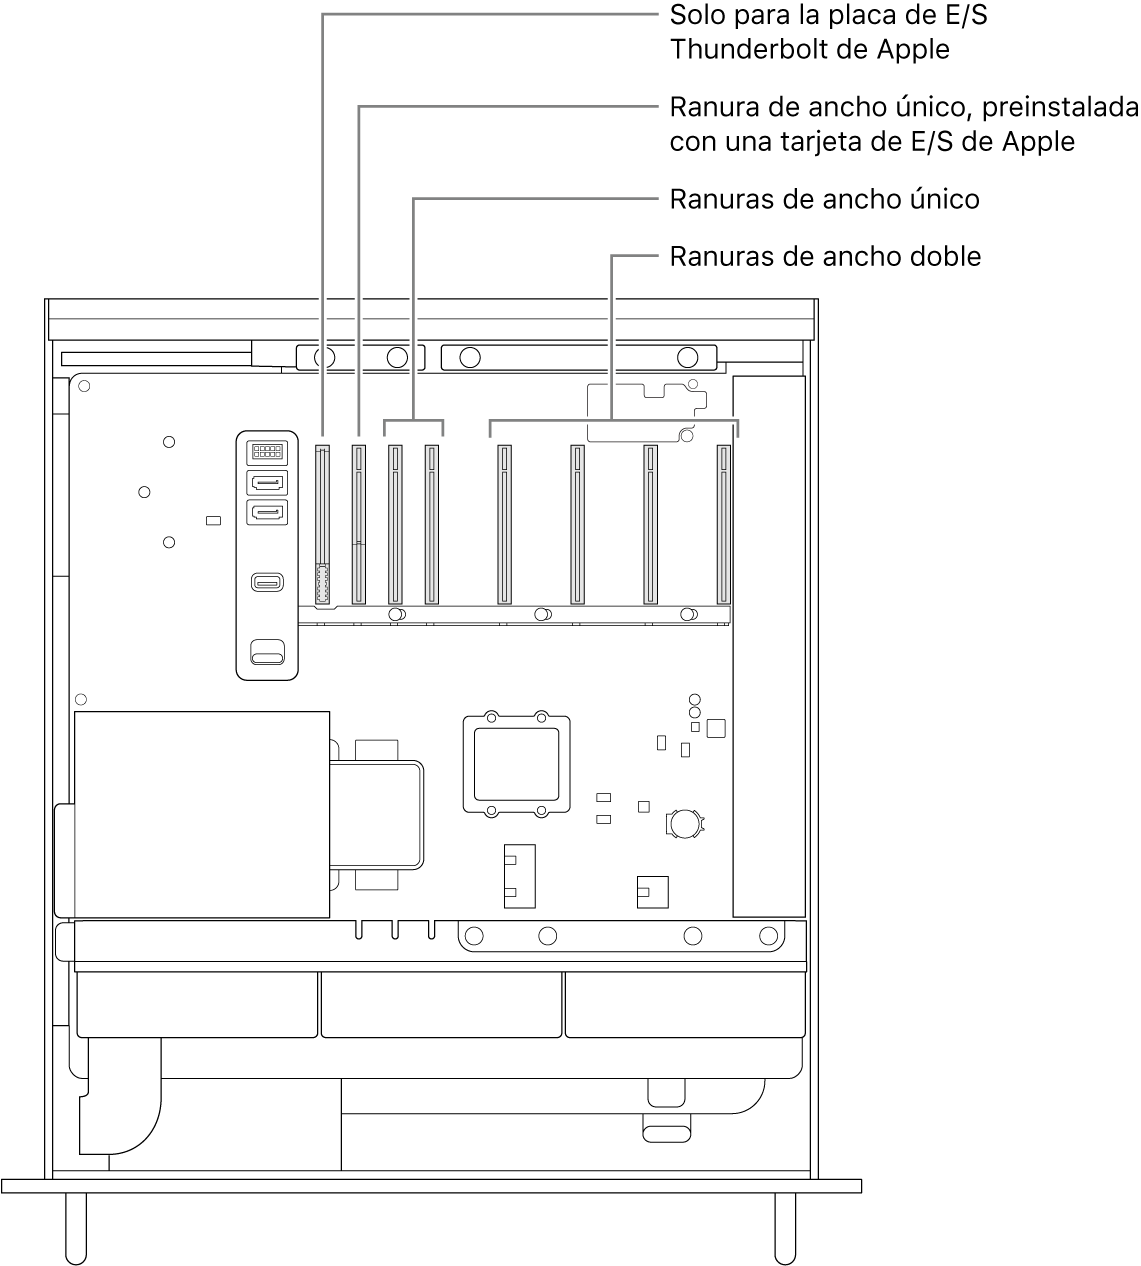 El lateral del Mac Pro abierto con indicaciones que muestran la ubicación de la ranura para la placa de E/S de Thunderbolt, la ranura de ancho único de la tarjeta de E/S de Apple, dos ranuras de ancho único y cuatro ranuras de ancho doble.